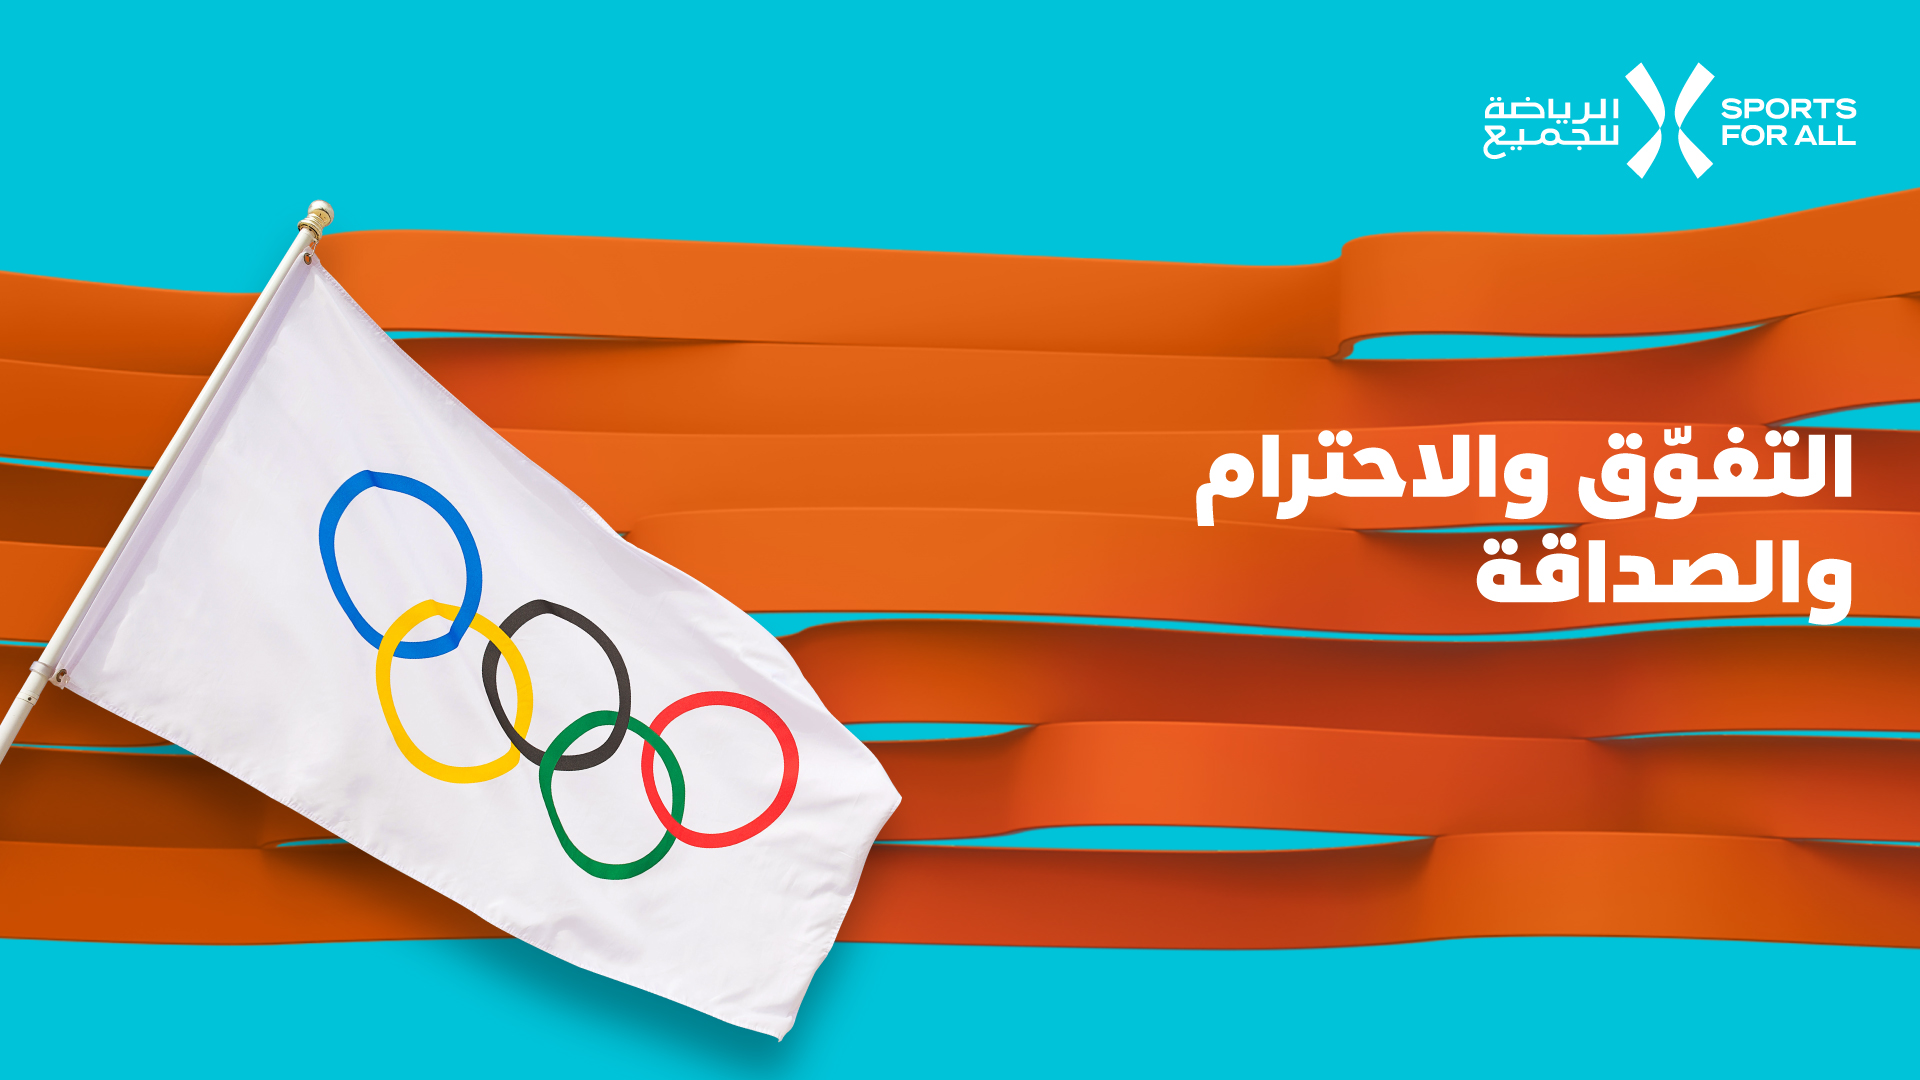 ثلاث لحظات فريدة في تاريخ مشاركات السعودية في الأولمبياد Sports For All